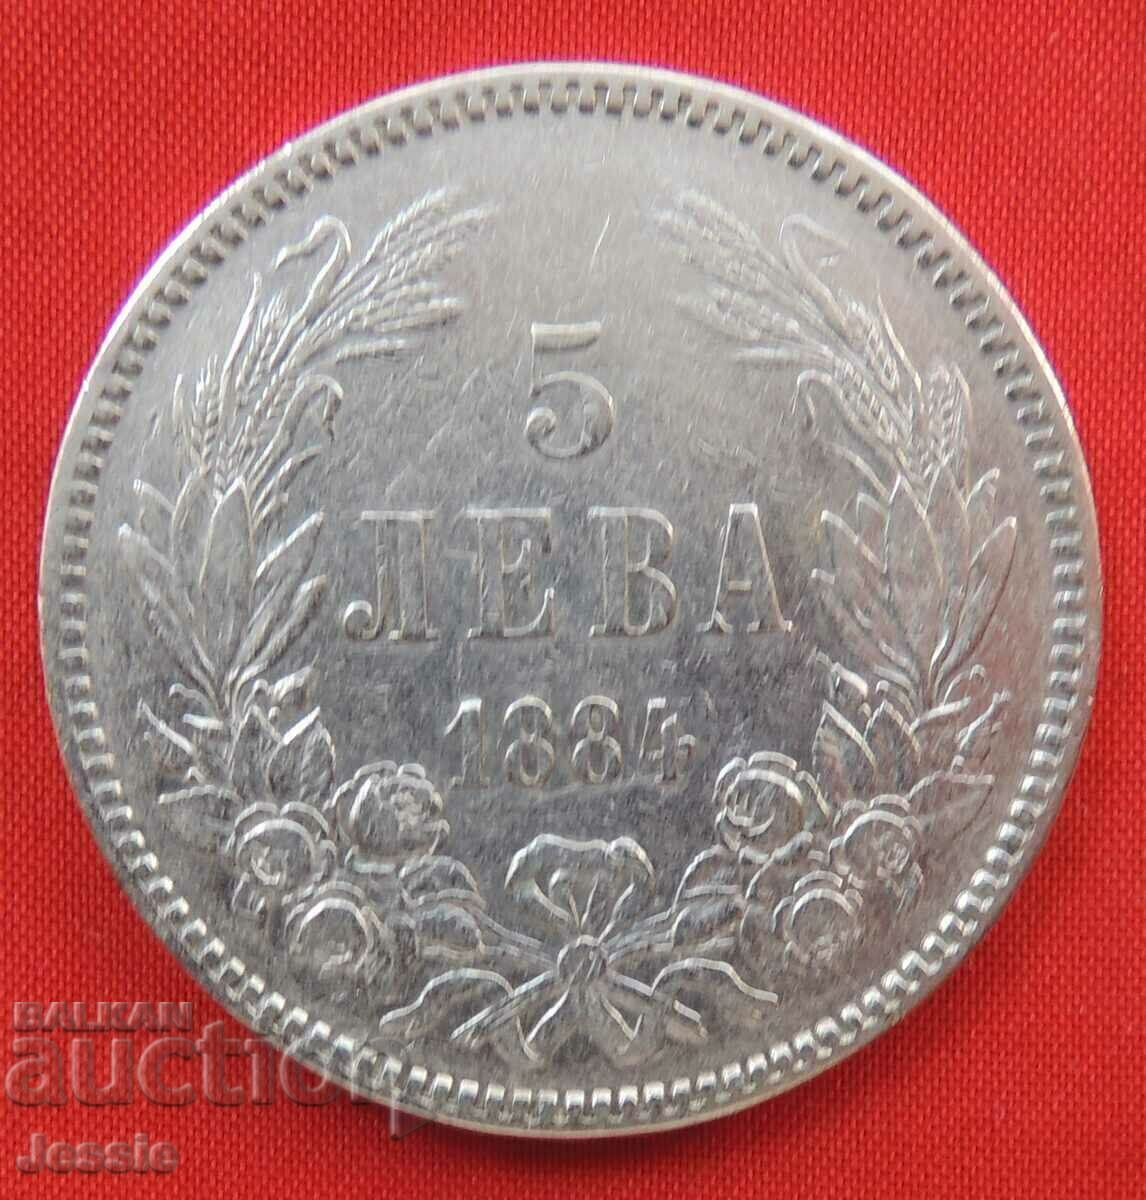 5 BGN 1884 argint NU MADE IN CHINA!